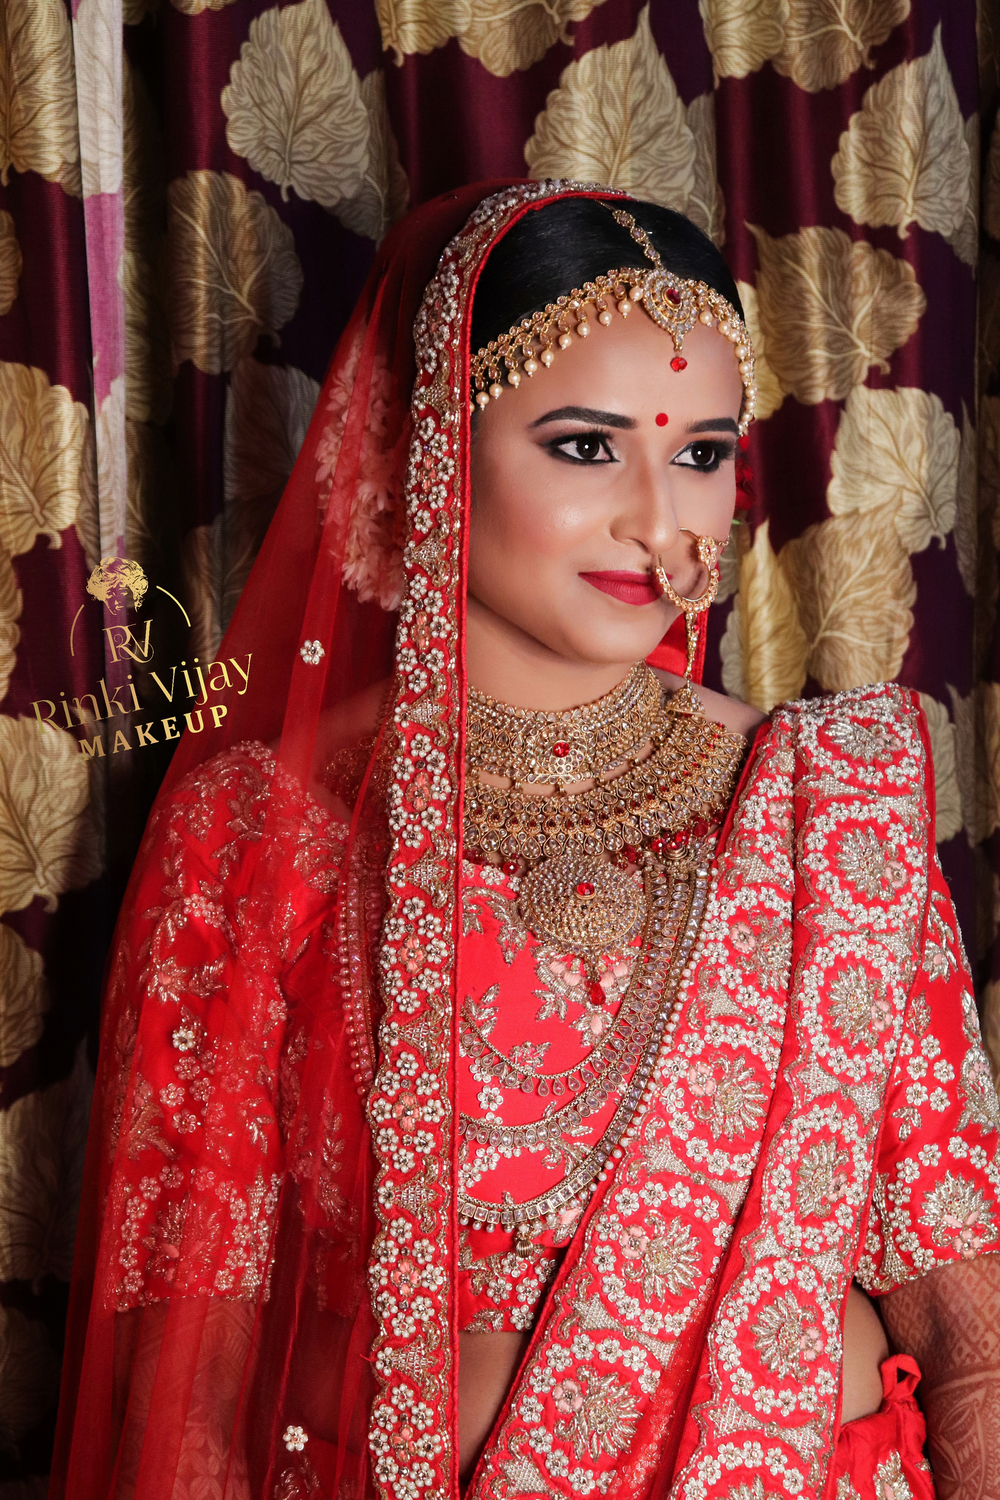 Photo From bridal makeup - By Makeup by Rinki Vijay